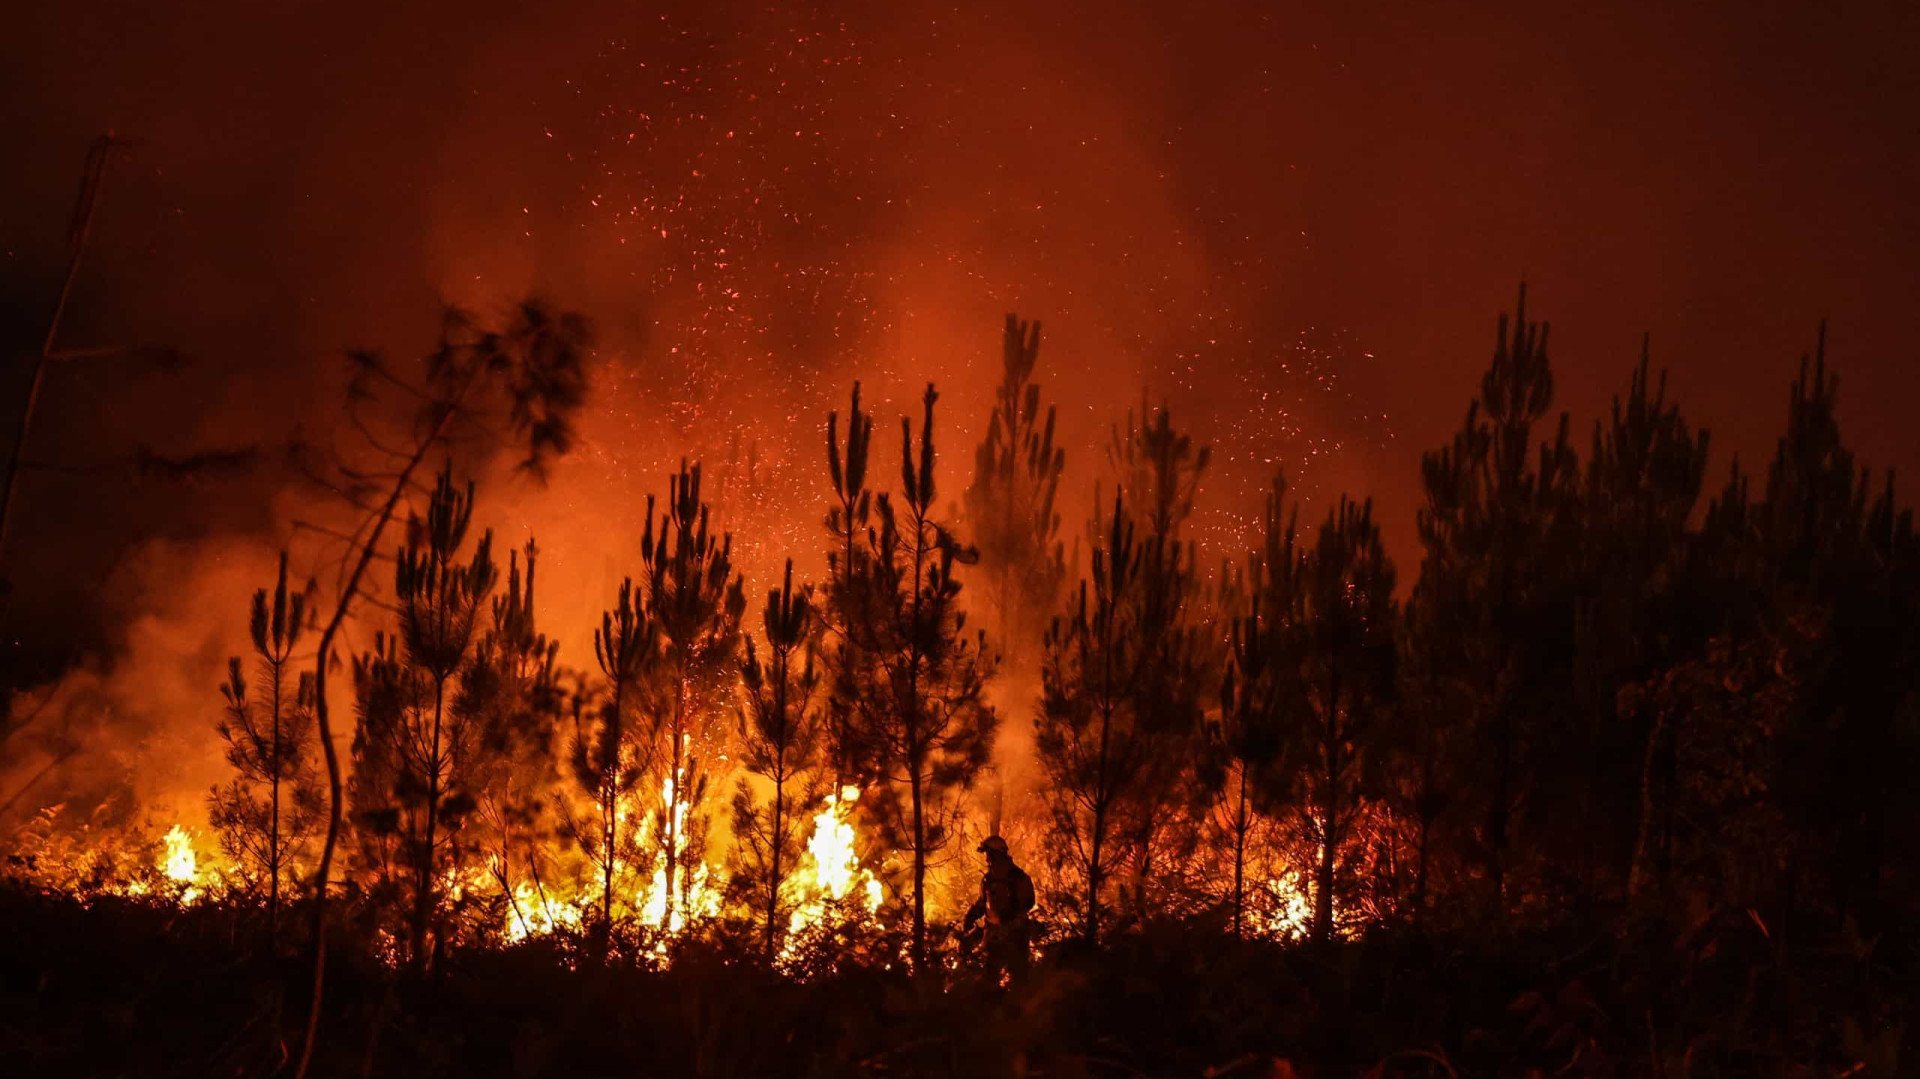 Durante o período de verão, os incêndios são muito frequentes na zona norte do país. Só em agosto do ano passado, os fogos causaram pelo menos 38 mortos e 160 feridos em 21 províncias do país, atribuídos às condições meteorológicas extremas